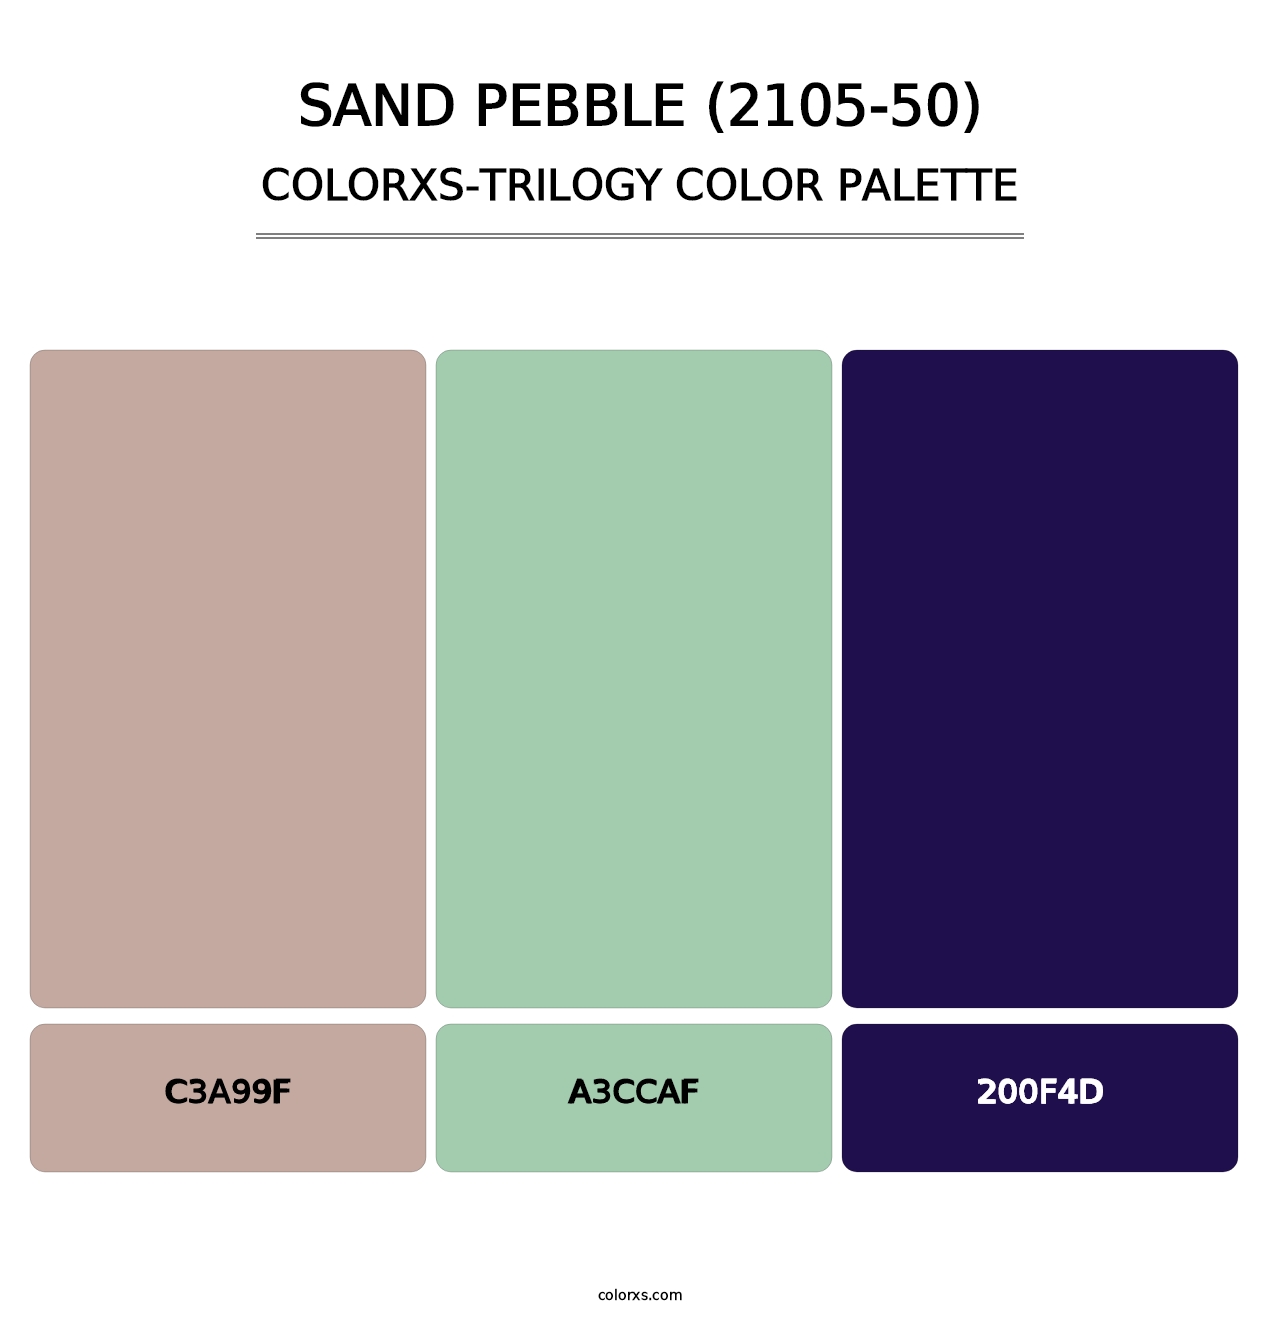 Sand Pebble (2105-50) - Colorxs Trilogy Palette